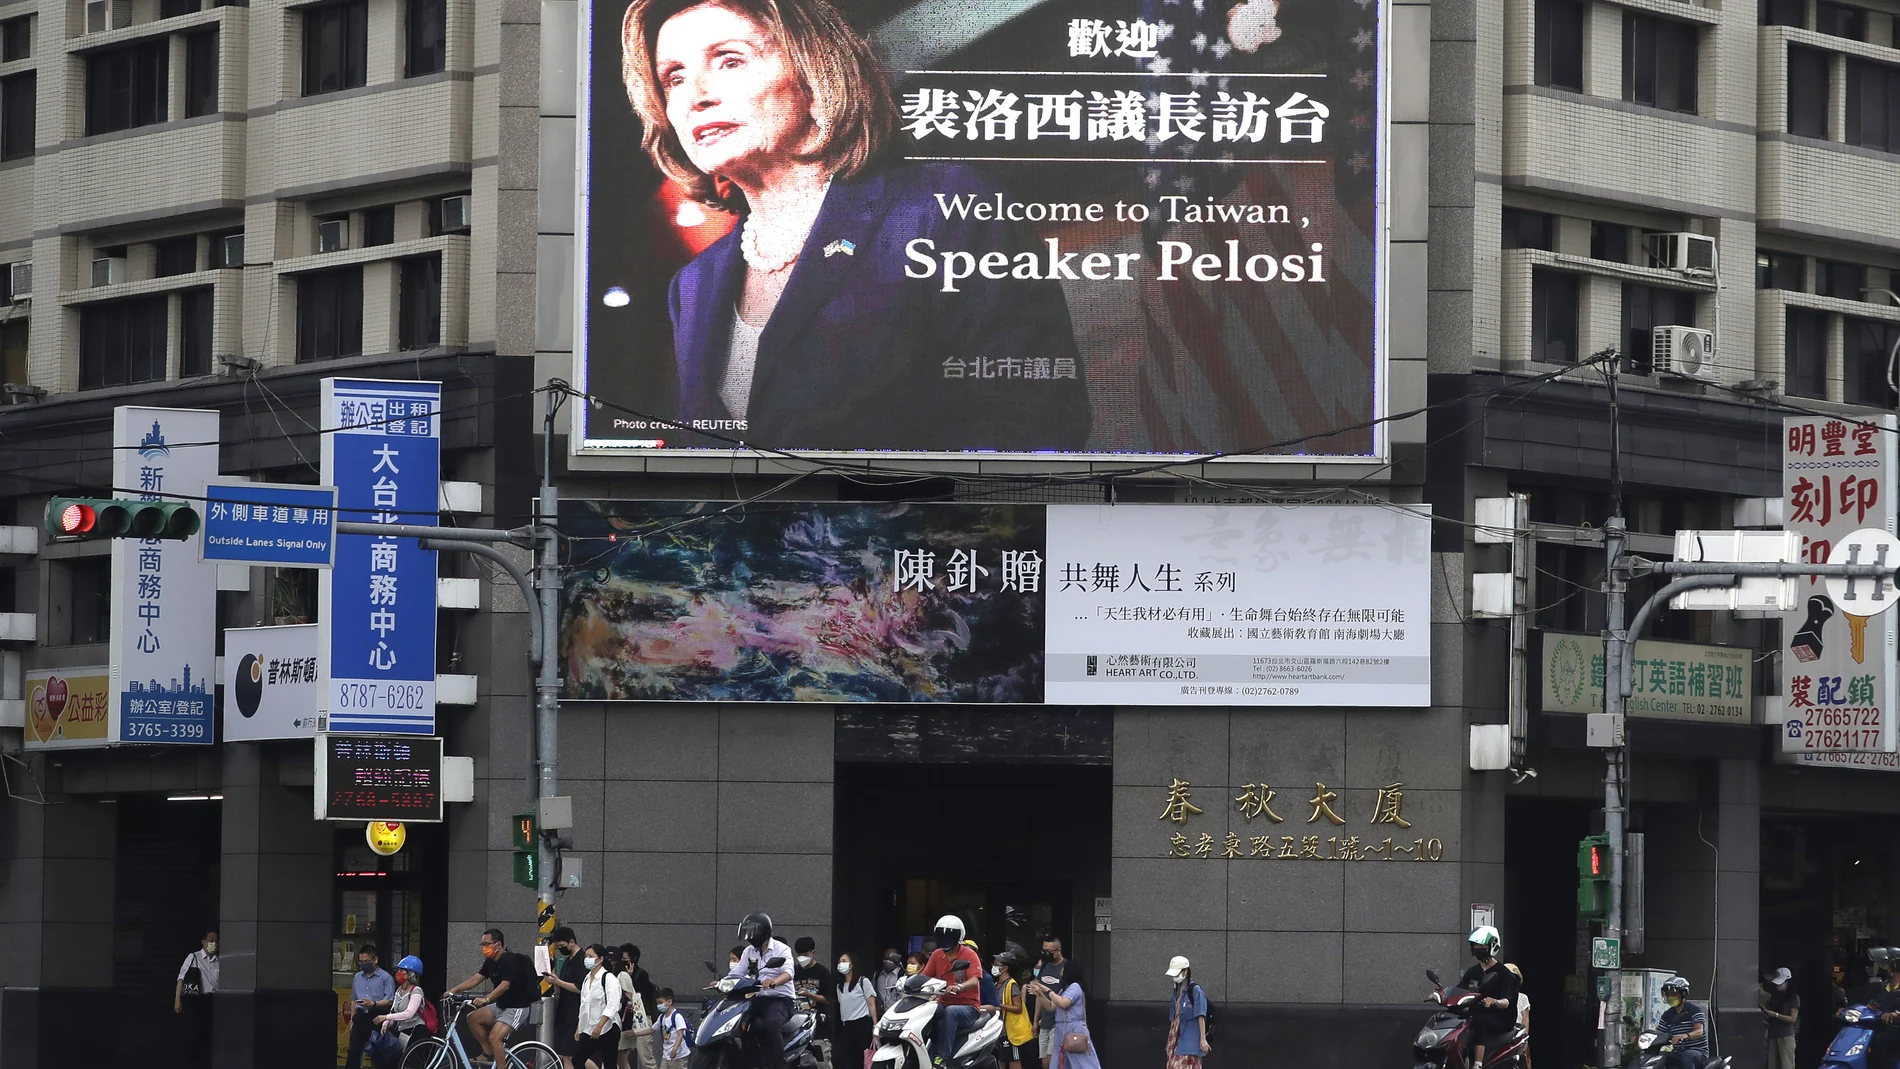 La visita de Nancy Pelosi ha desatado una crisis diplomática